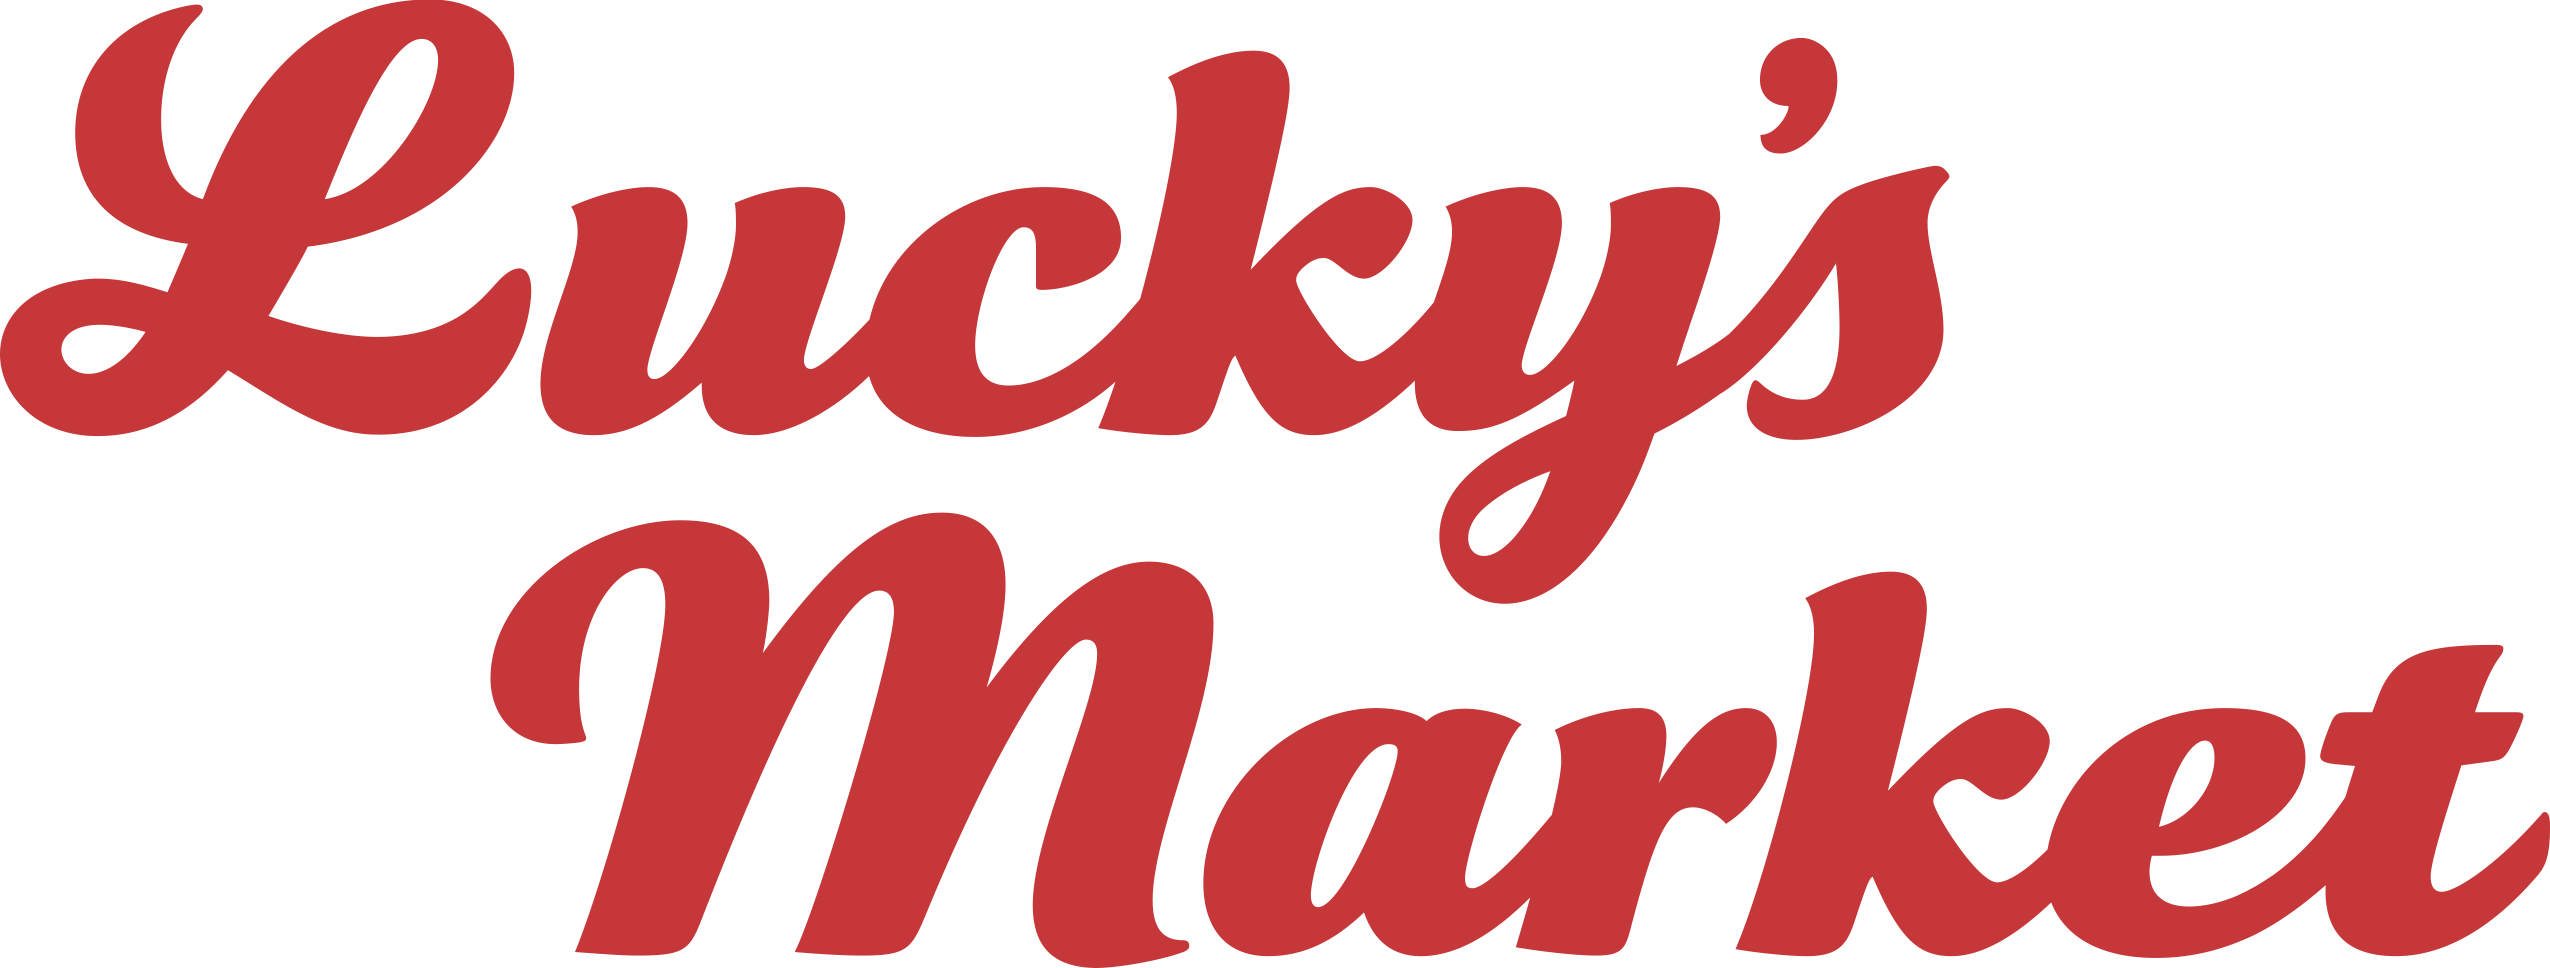 LuckysMarket